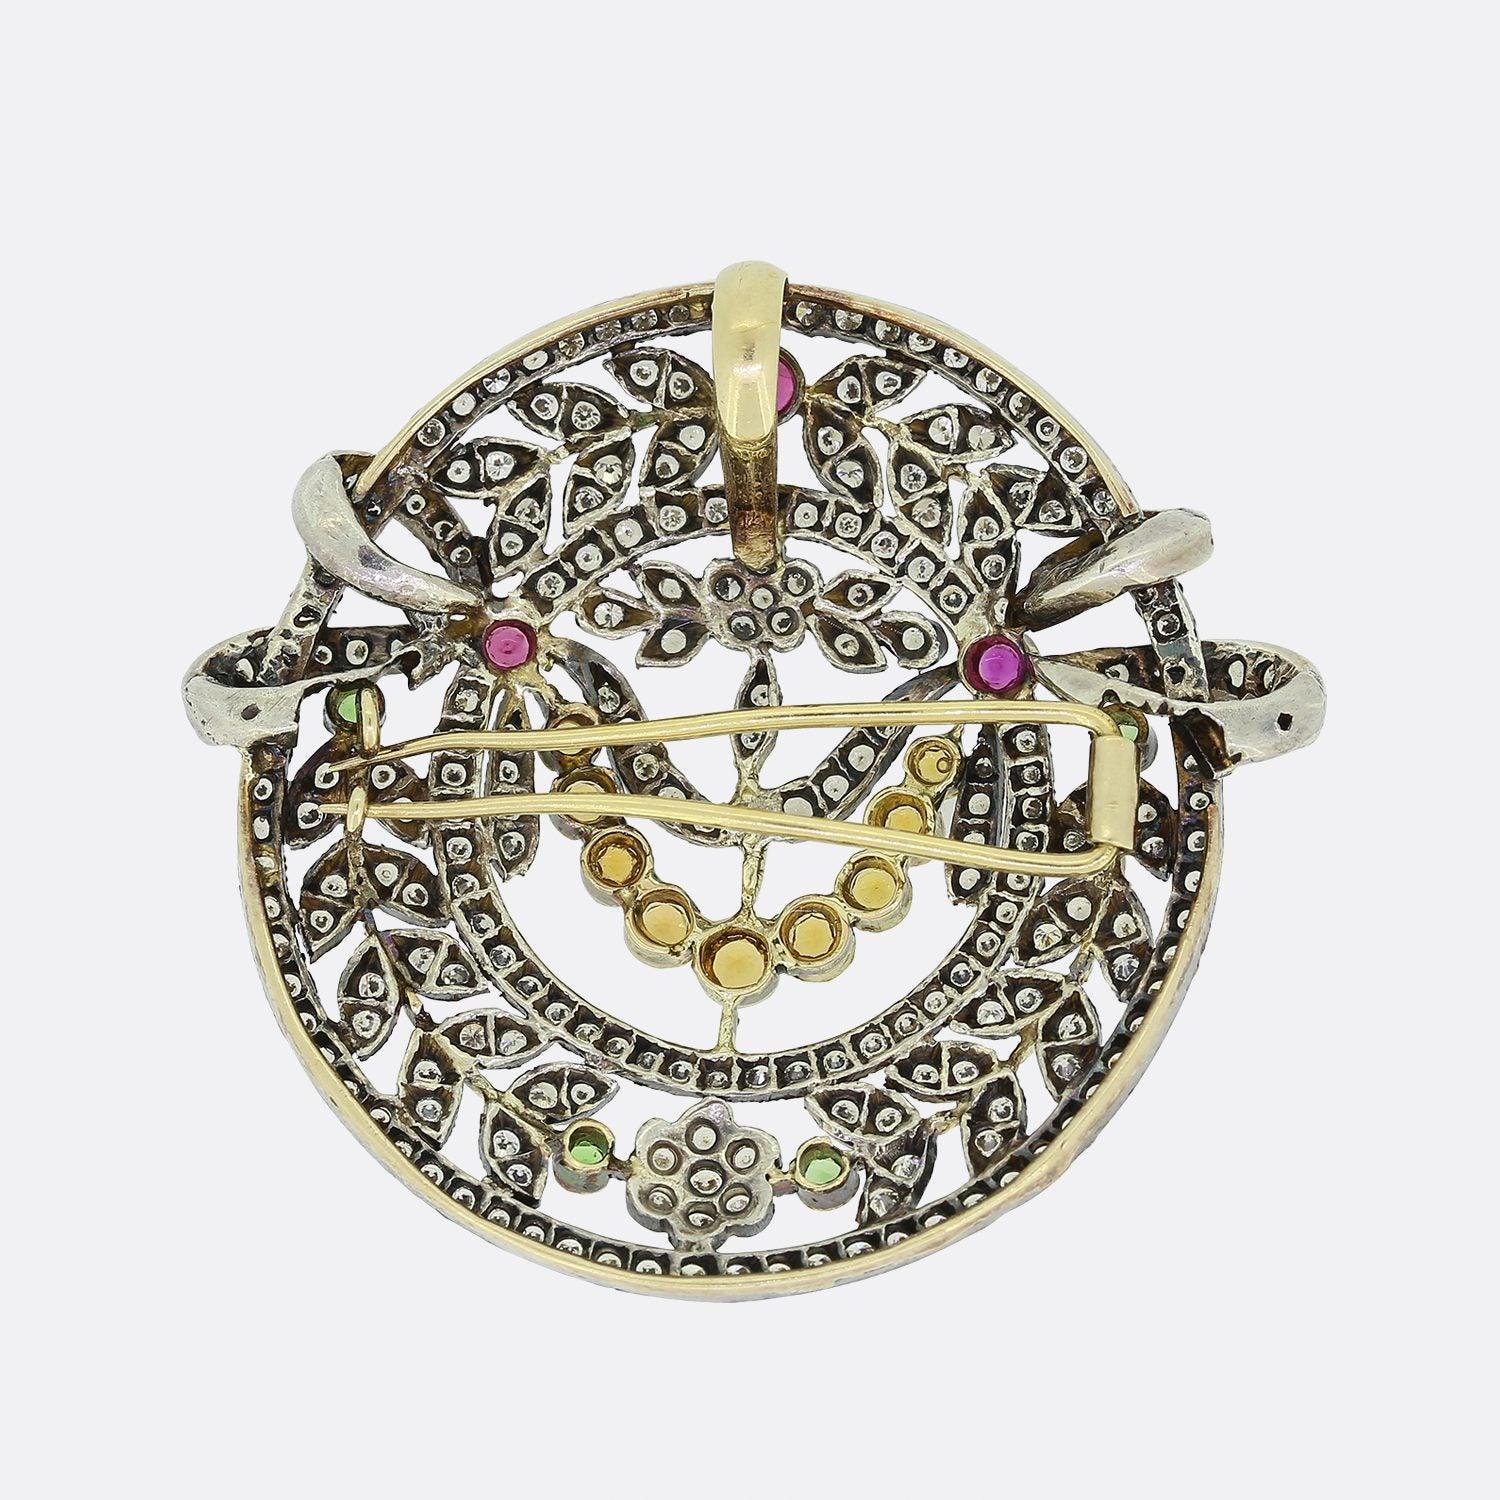 Voici un joli pendentif/broche vintage serti de pierres précieuses. Le pendentif est serti d'un ensemble de diamants ronds de taille brillant, de péridots, de rubis et de citrines dans un cadre floral en argent. Le dos comporte une boucle de